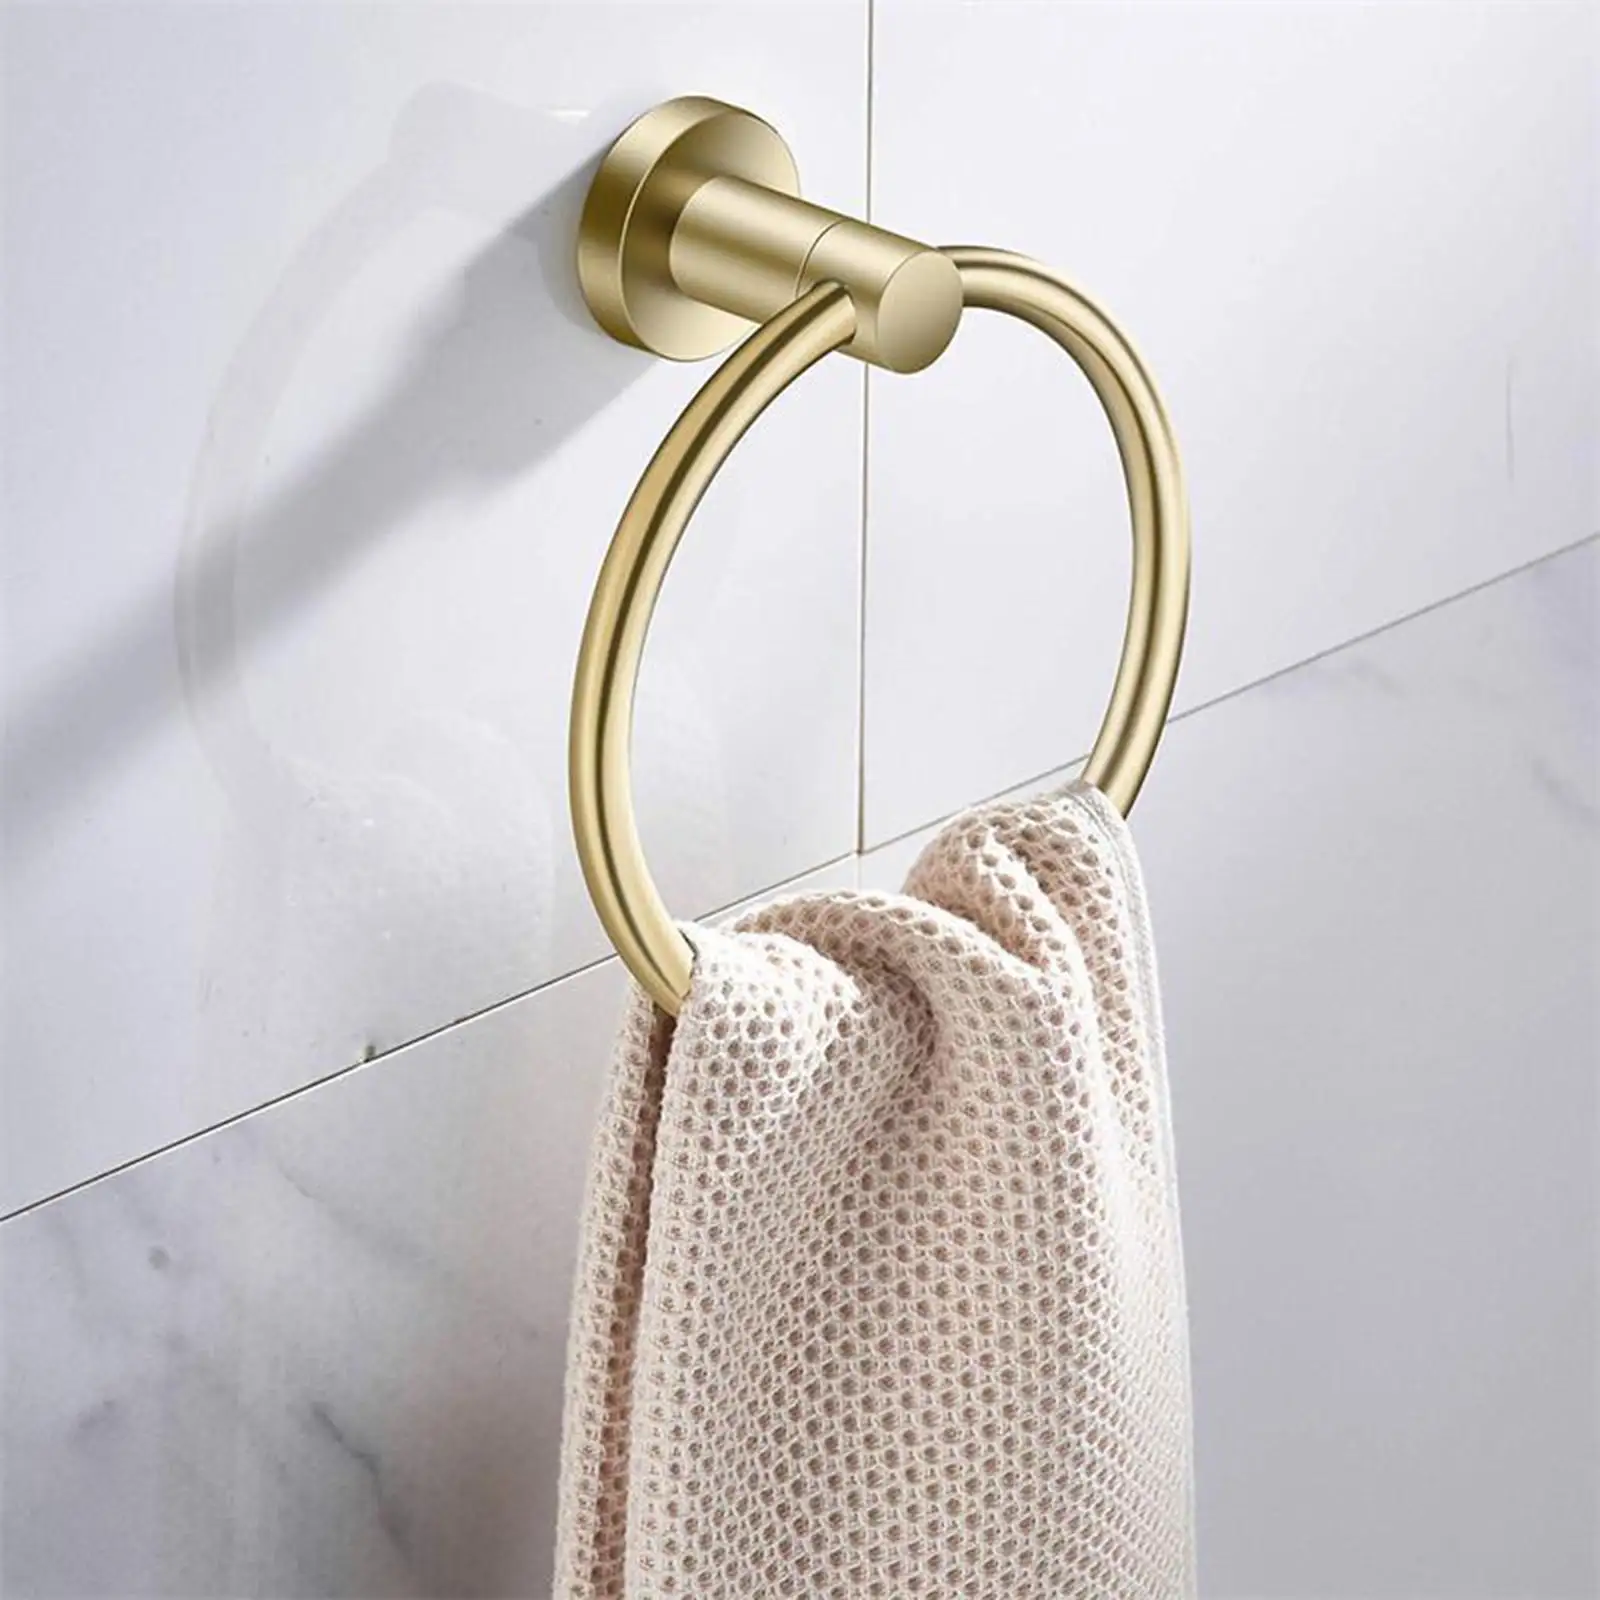 Stainless Steel Towel Rings for Bathroom Hand Towel Holder Modern Circle Towel Hanger Round Towel Rack Wall Mounted Towel Rings